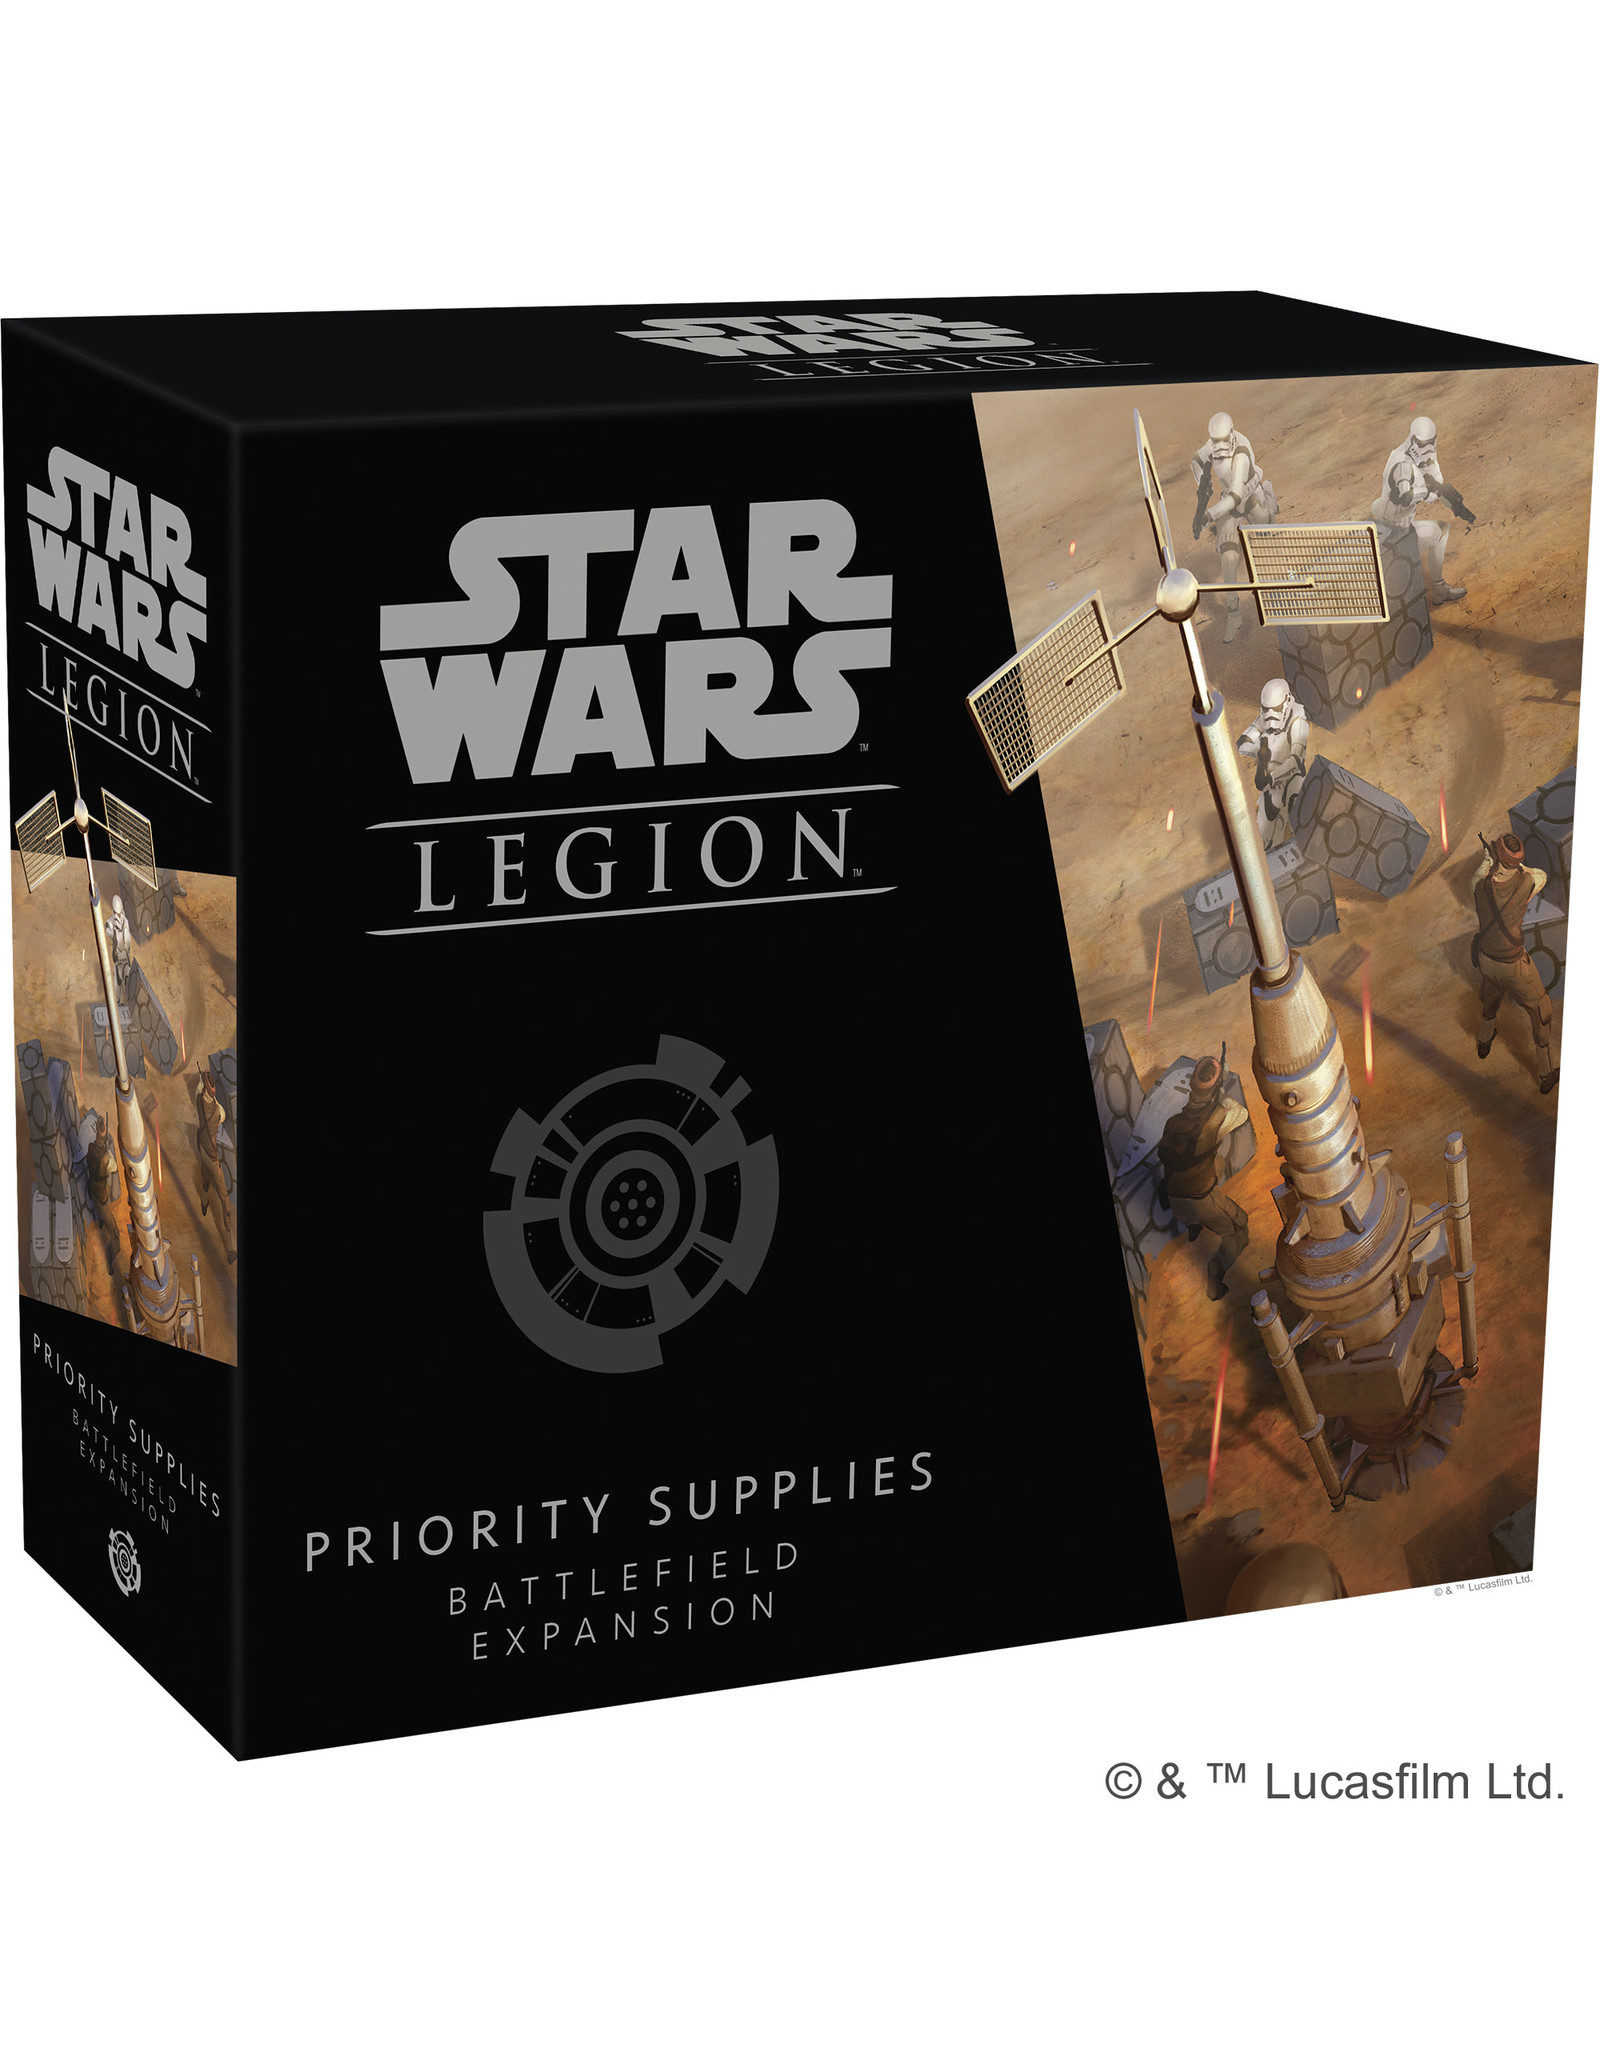 STAR WARS LEGION Star Wars Legion Priority Supplies Battlefield Expansion